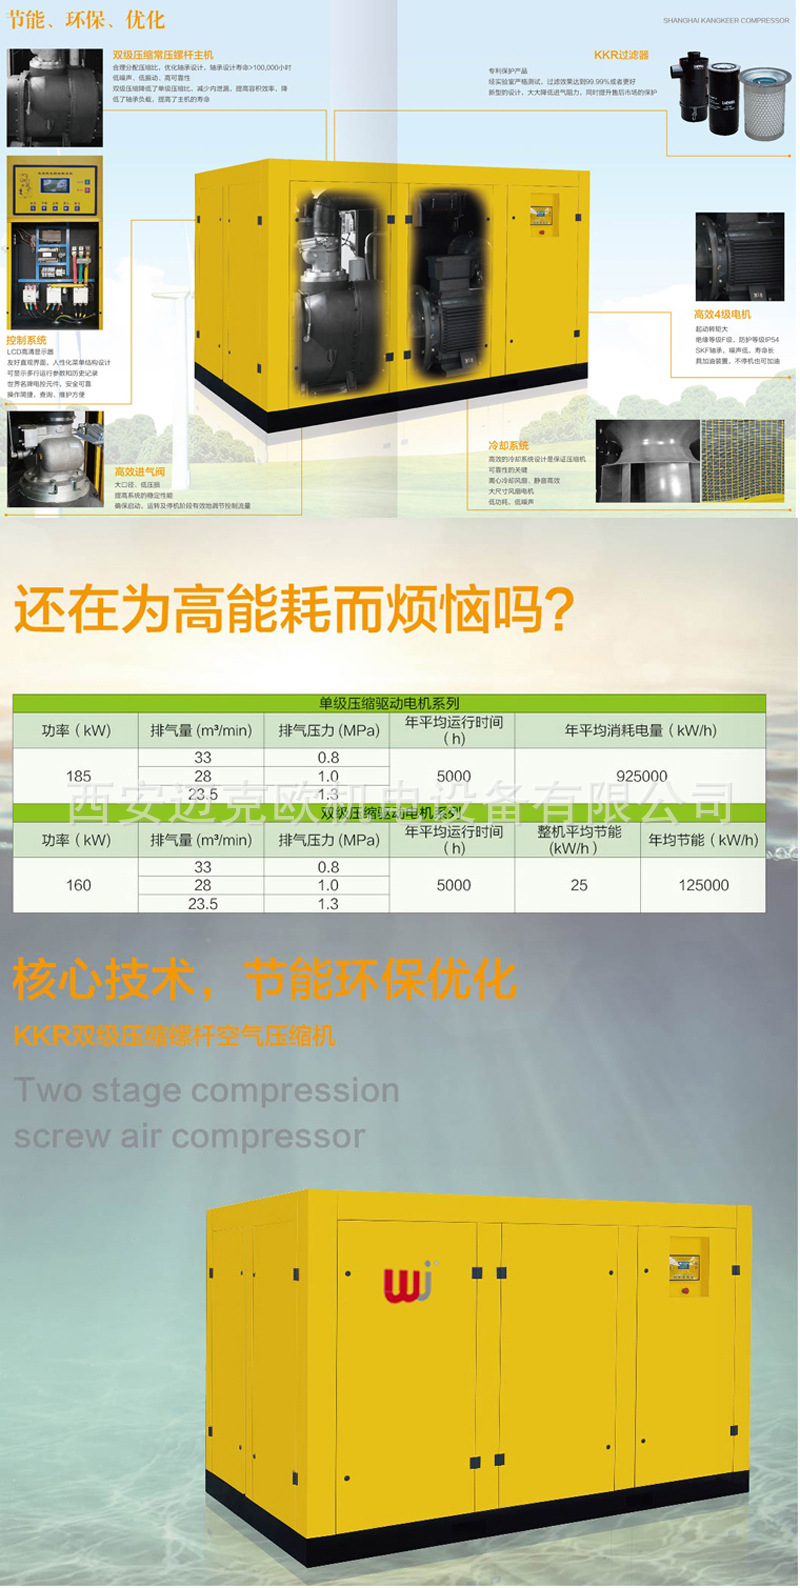 榆林供应双级永磁变频空压机、康克尔螺杆空压机维修保养、示例图5